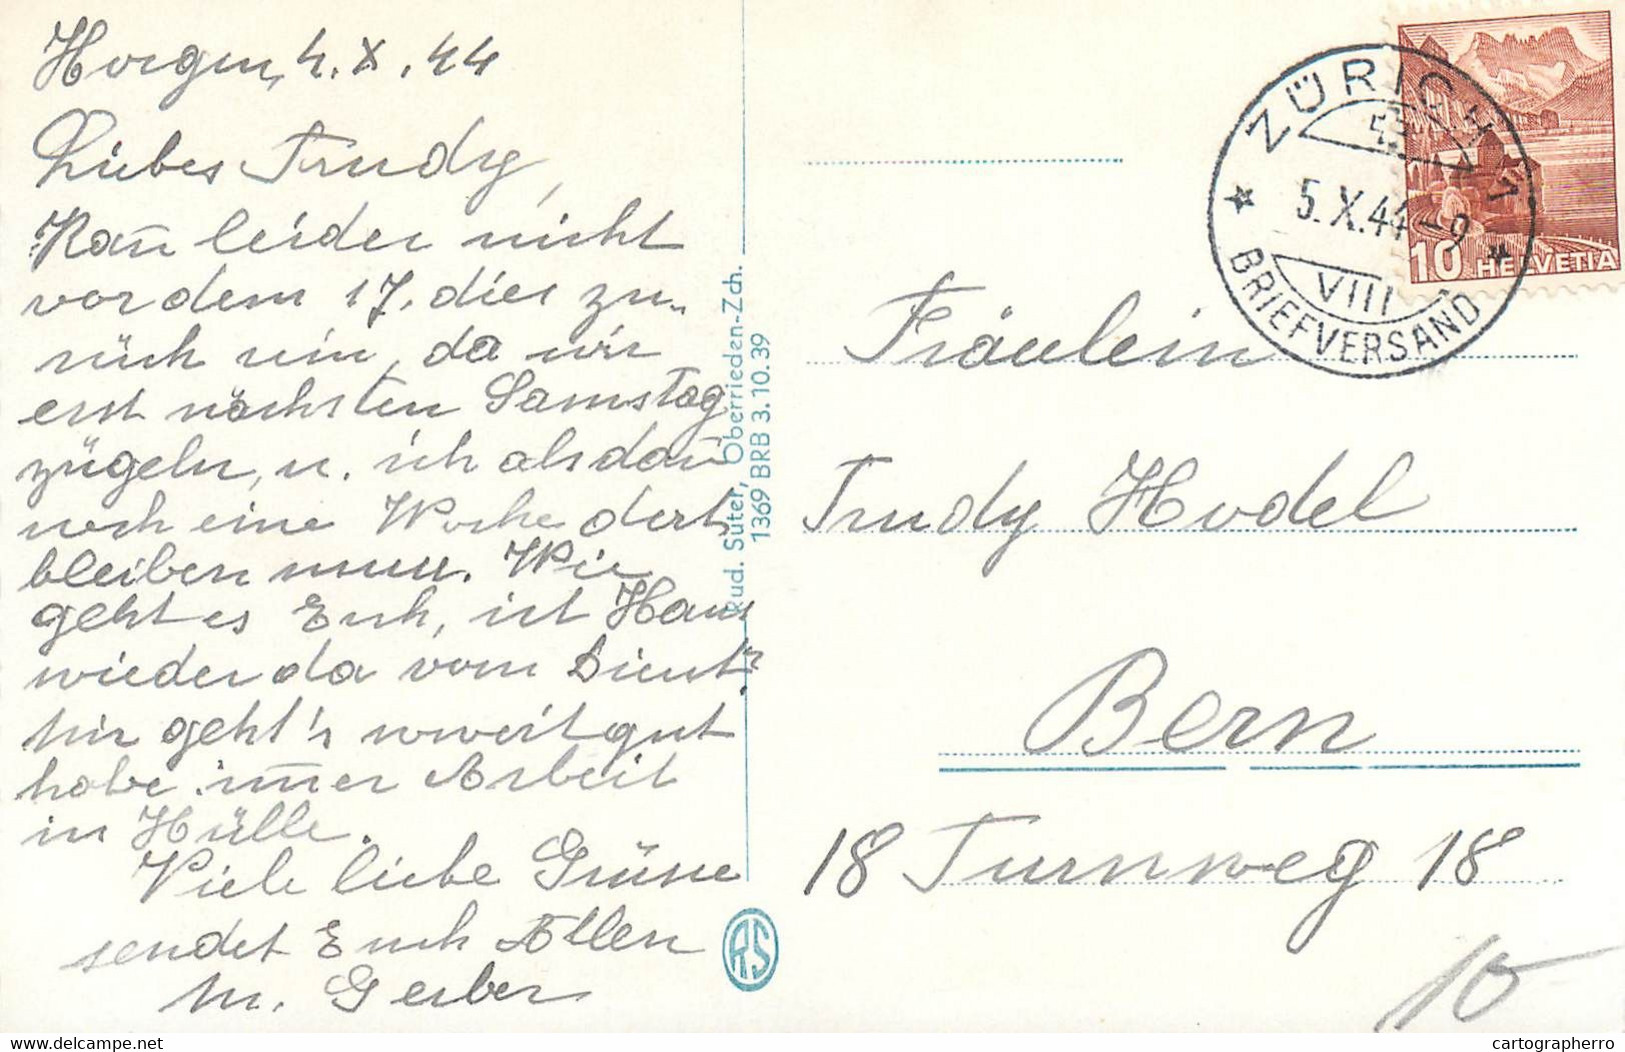 Europe Switzerland Zurich HORGEN Gegen Die Glarneralpen 1944 Postcard - Horgen